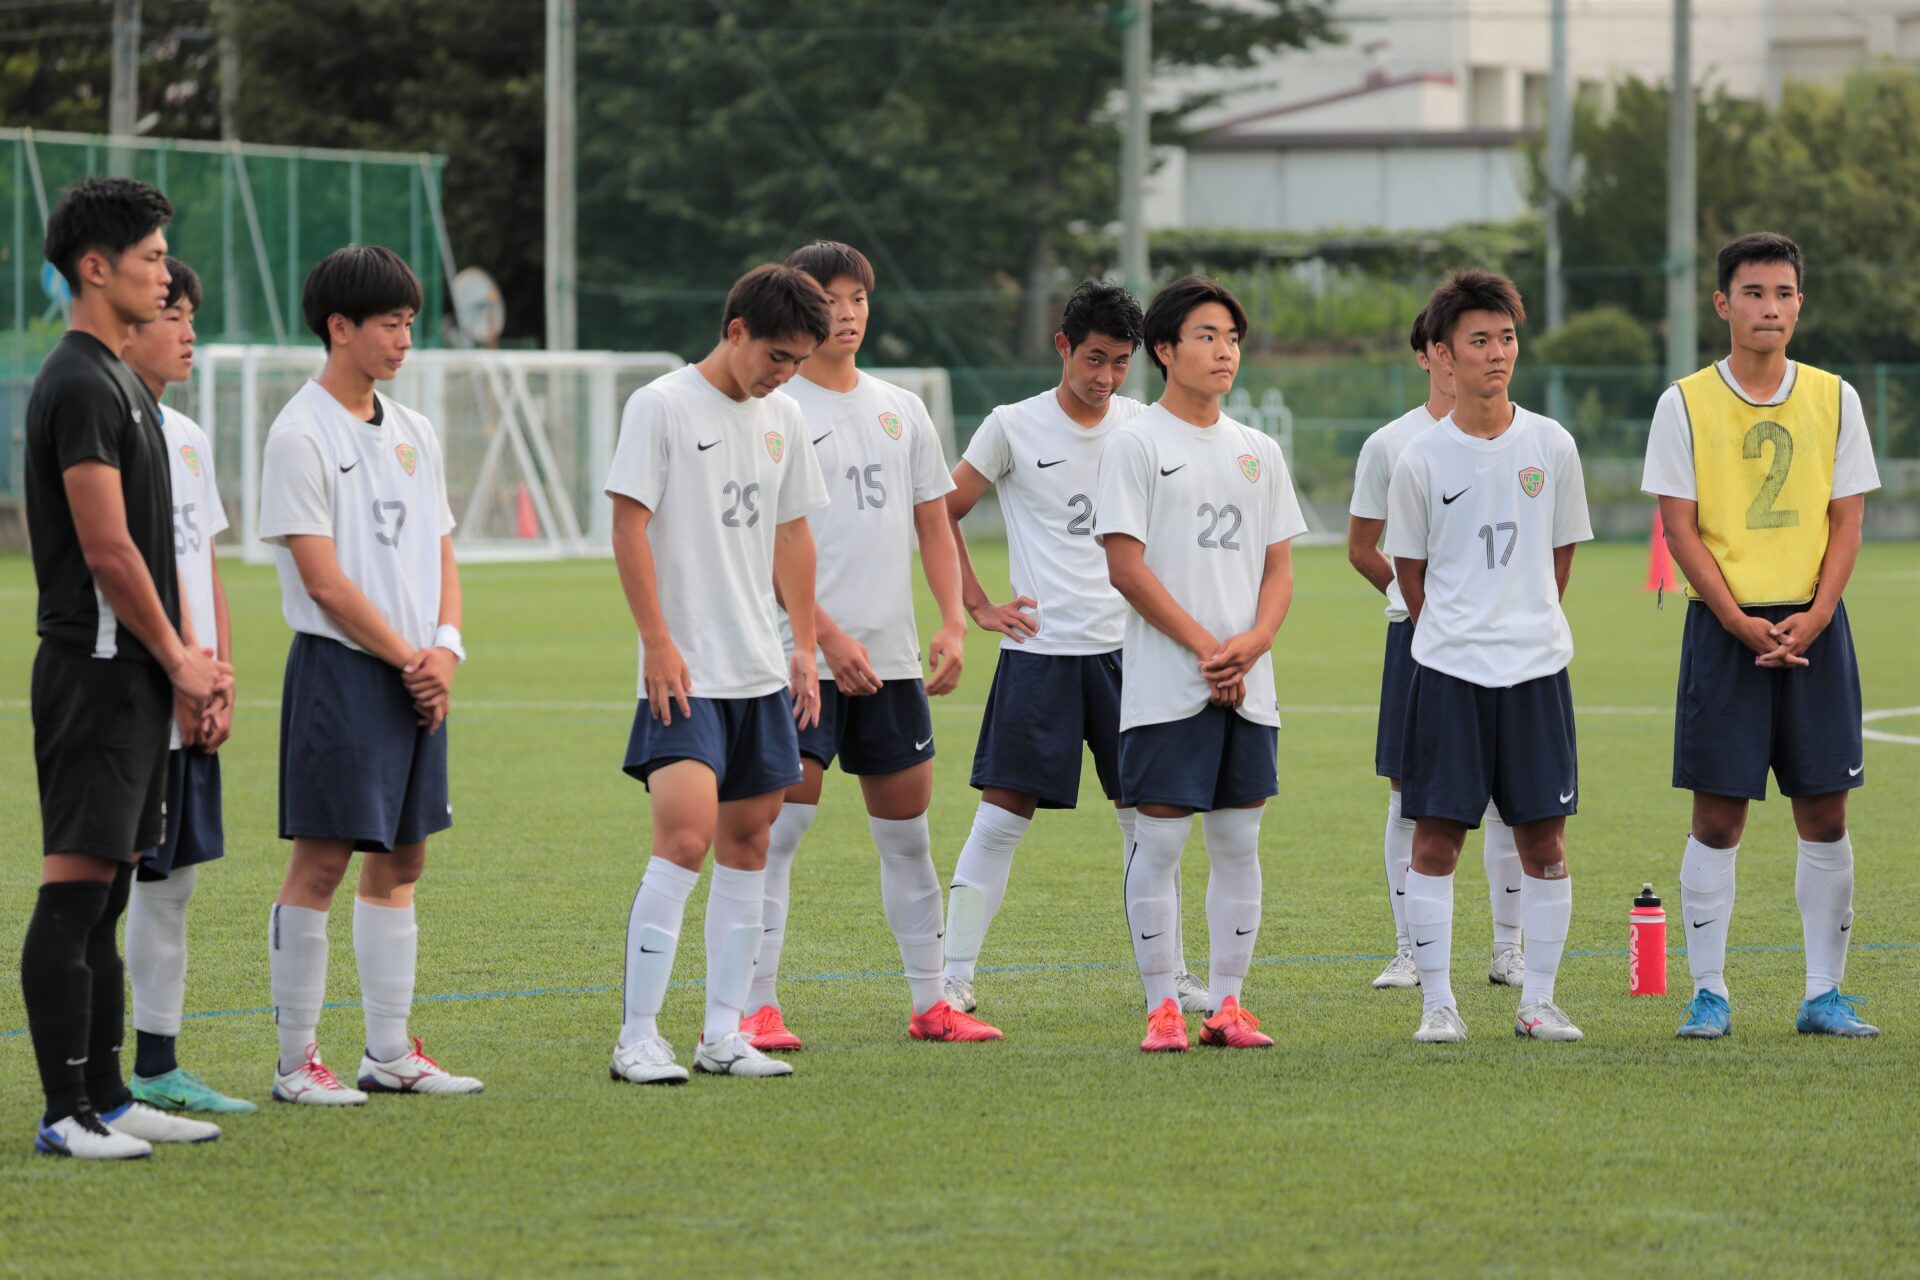 21年8月11日 全国高校サッカーインターハイ開幕目前 一戦一戦 力を出し切りたい 長野県高校サッカーclimax